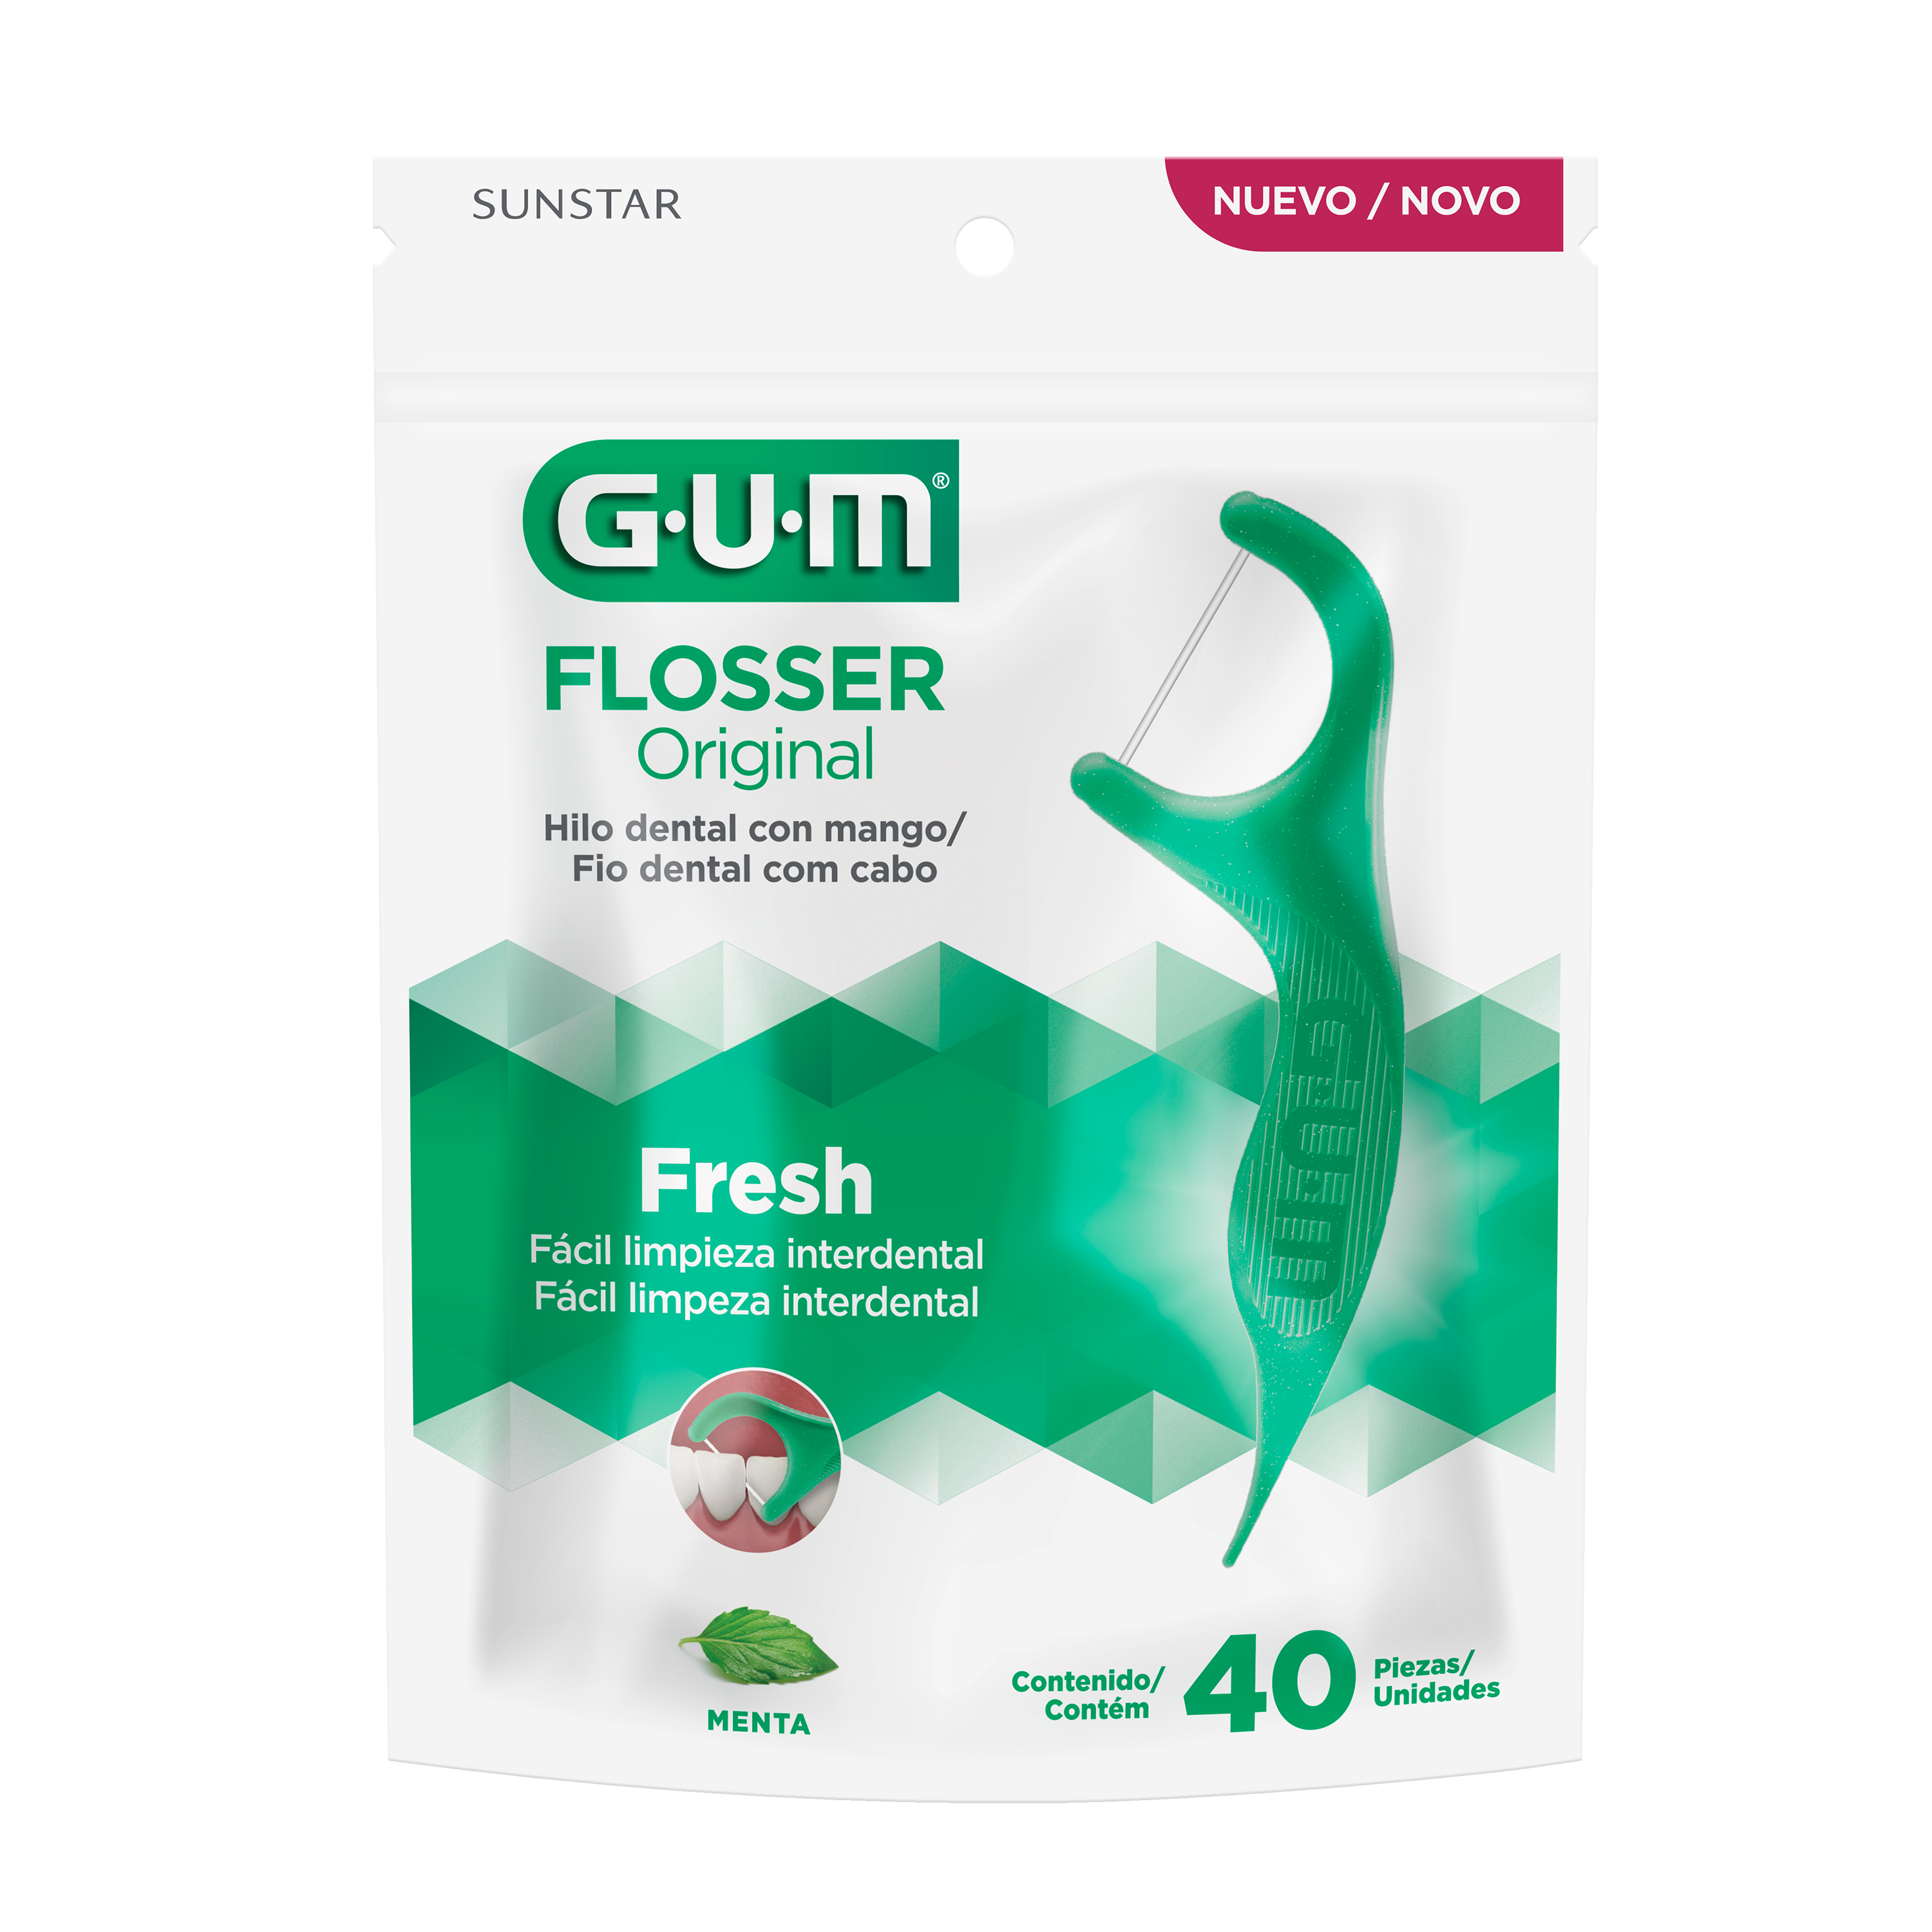 GUM Flossers - Original - Hilo Dental con Mango - Menta Refrescante, 40u.